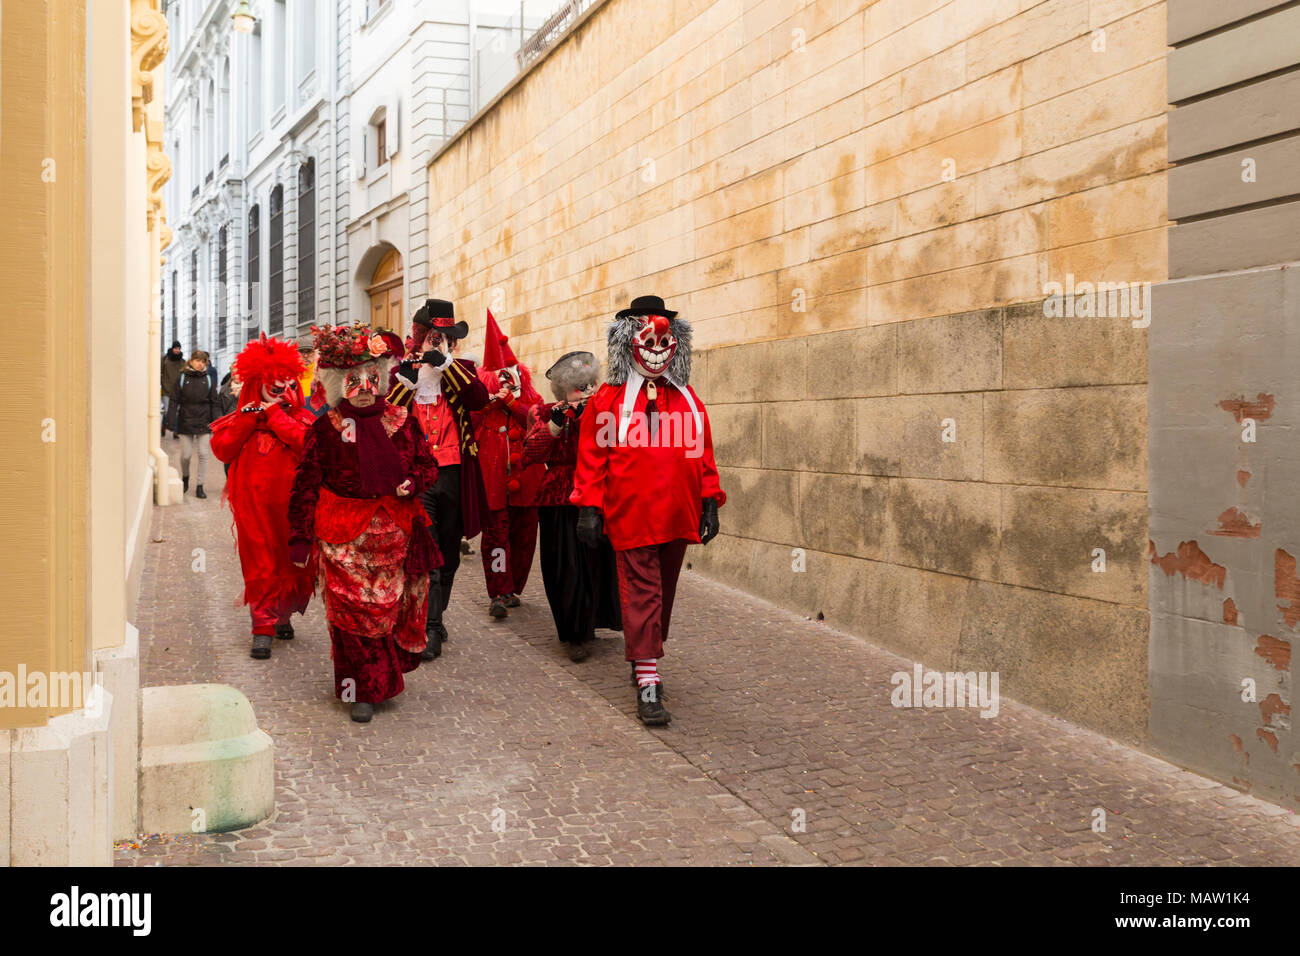 Carnaval de Bâle. Rheinsprung, Bâle, Suisse - 21 février 2018. Groupe de fêtards s'en rouge costumes dans la vieille ville Banque D'Images